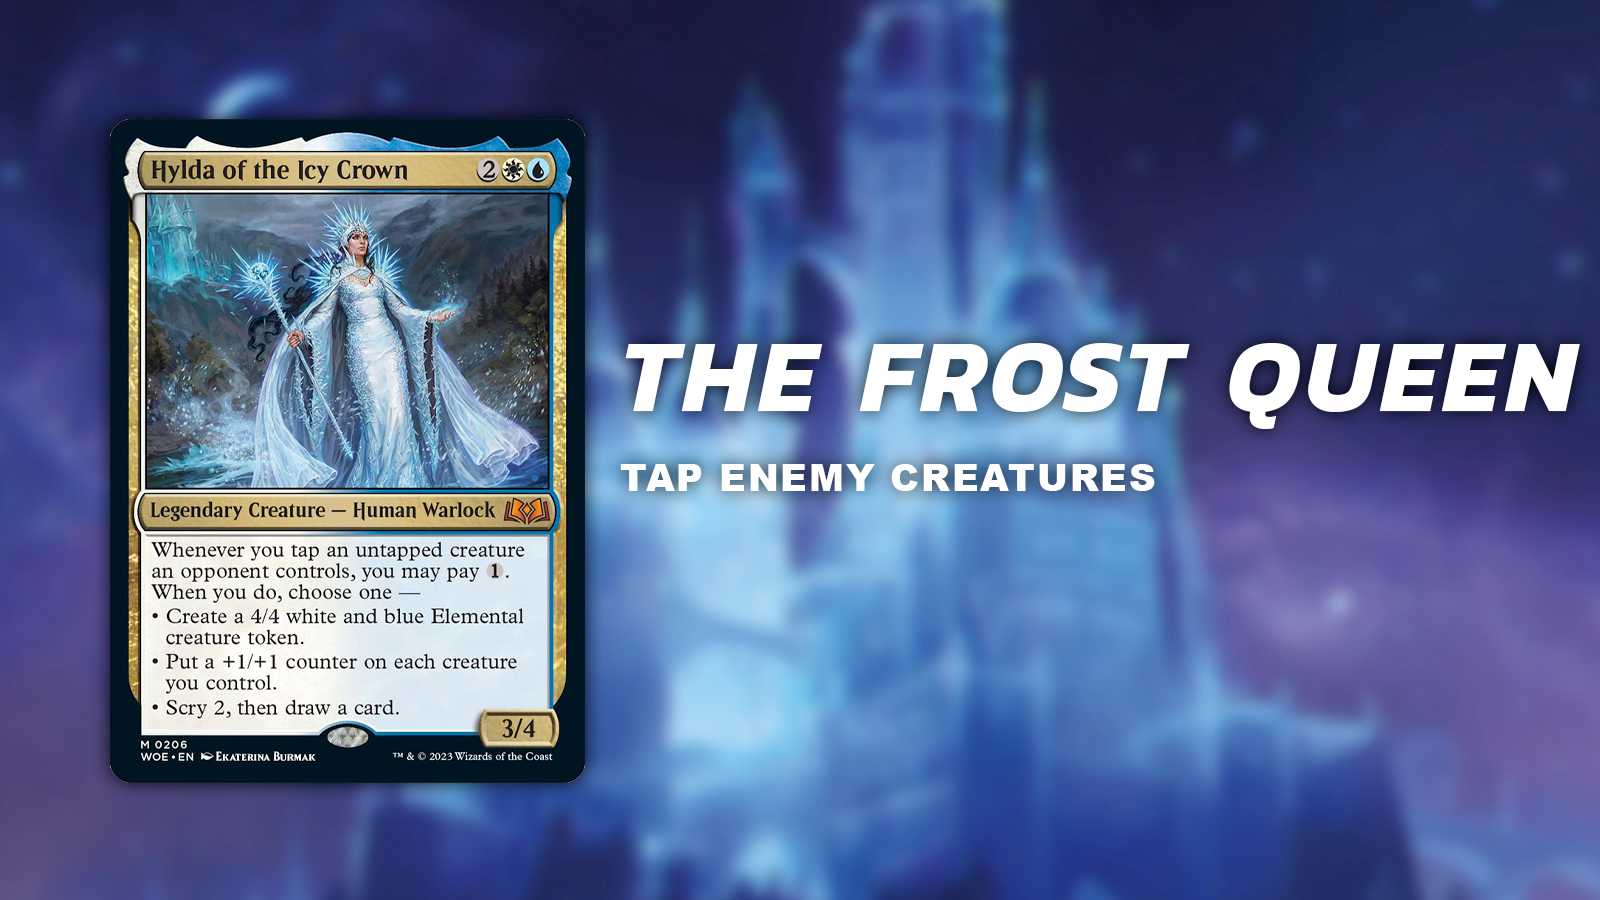 the frost queen (tap enemey creatures)